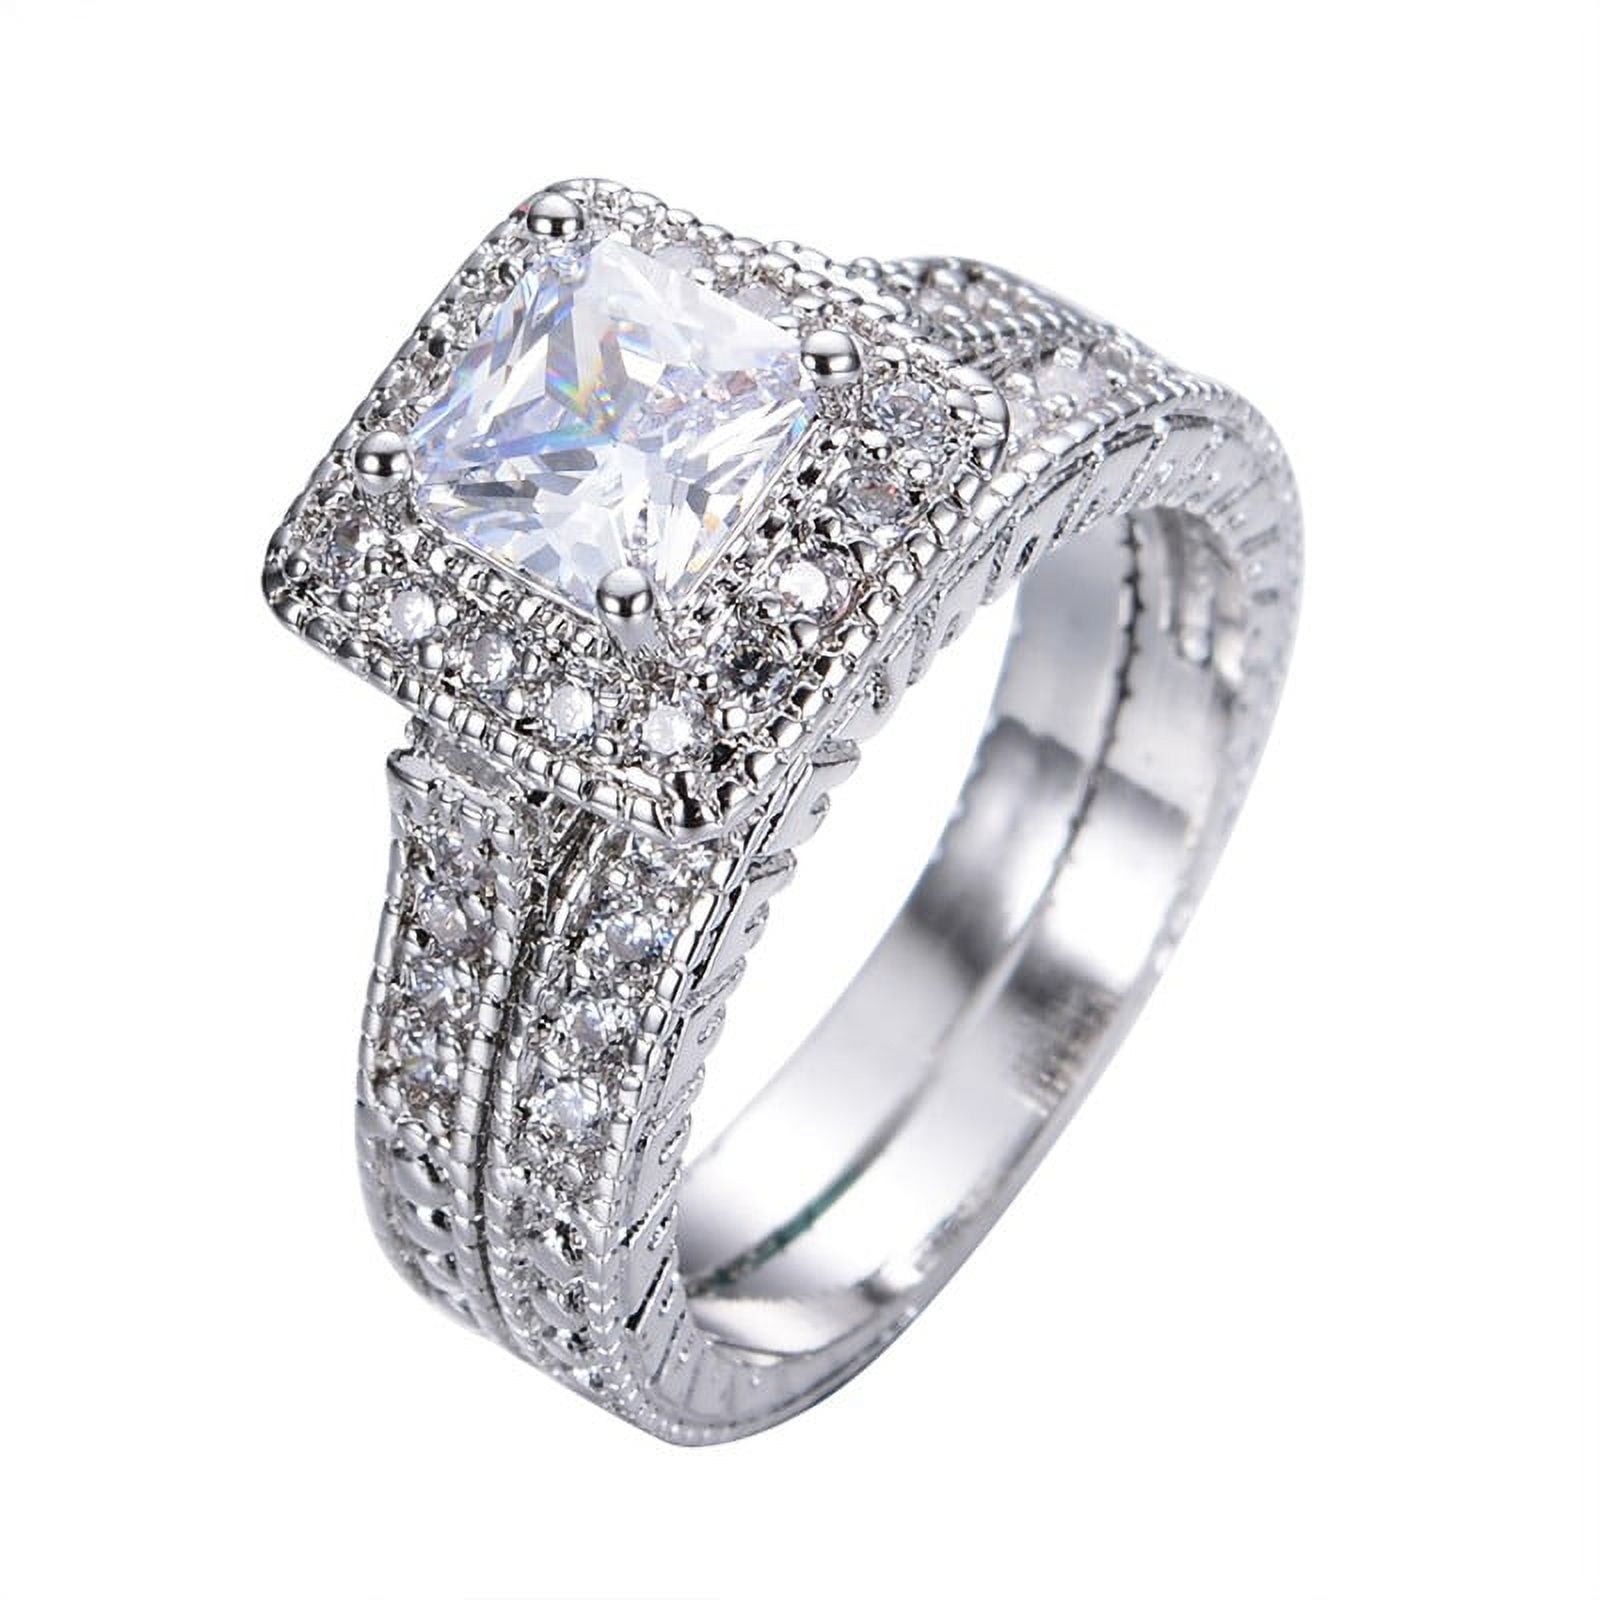 1 Carat Princess Cut Moissanite Wedding Set - Bridal Set - Milgrain Ring -  Vintage Ring - Halo Ring - 18K White Gold Over Silver 